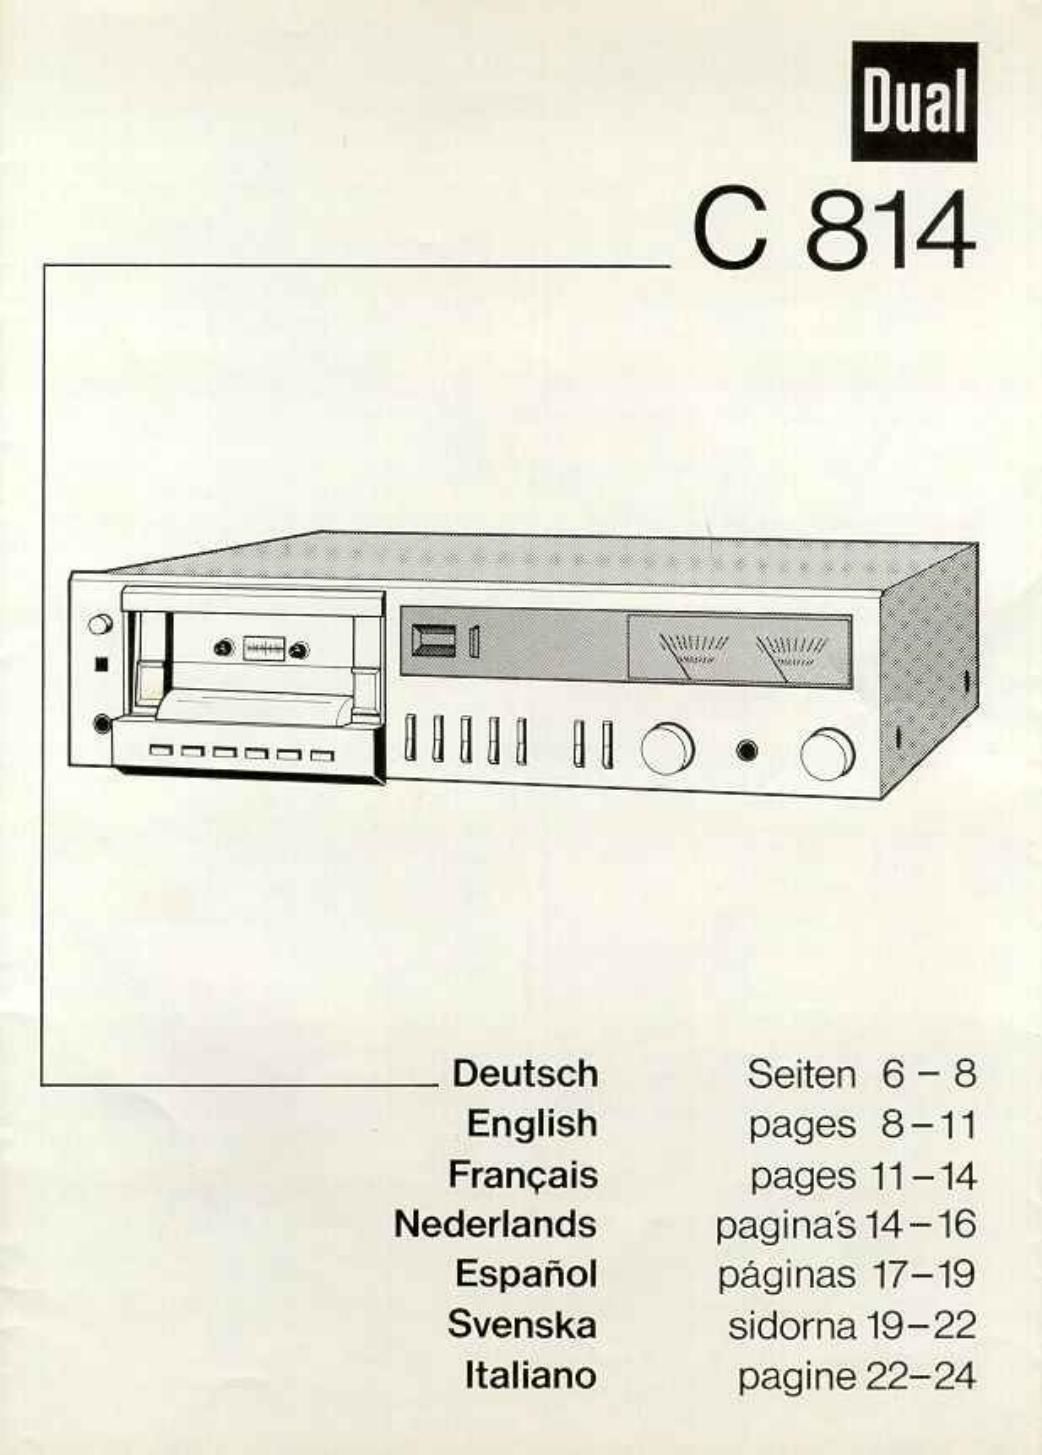 Dual C 814 Owners Manual